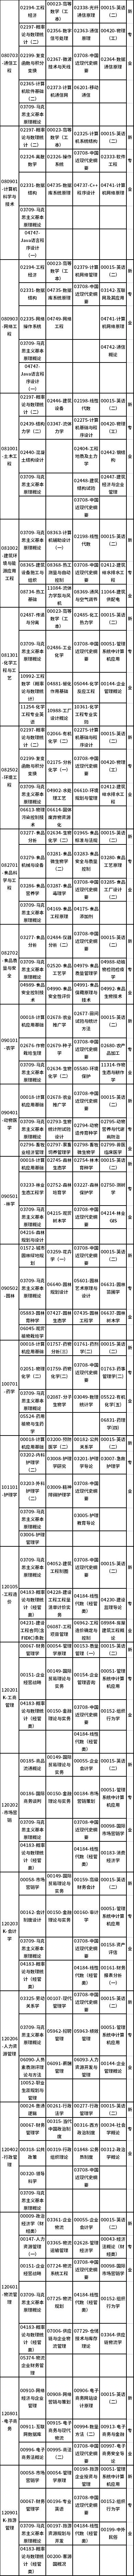 广西2022年10月自考课程考试安排表